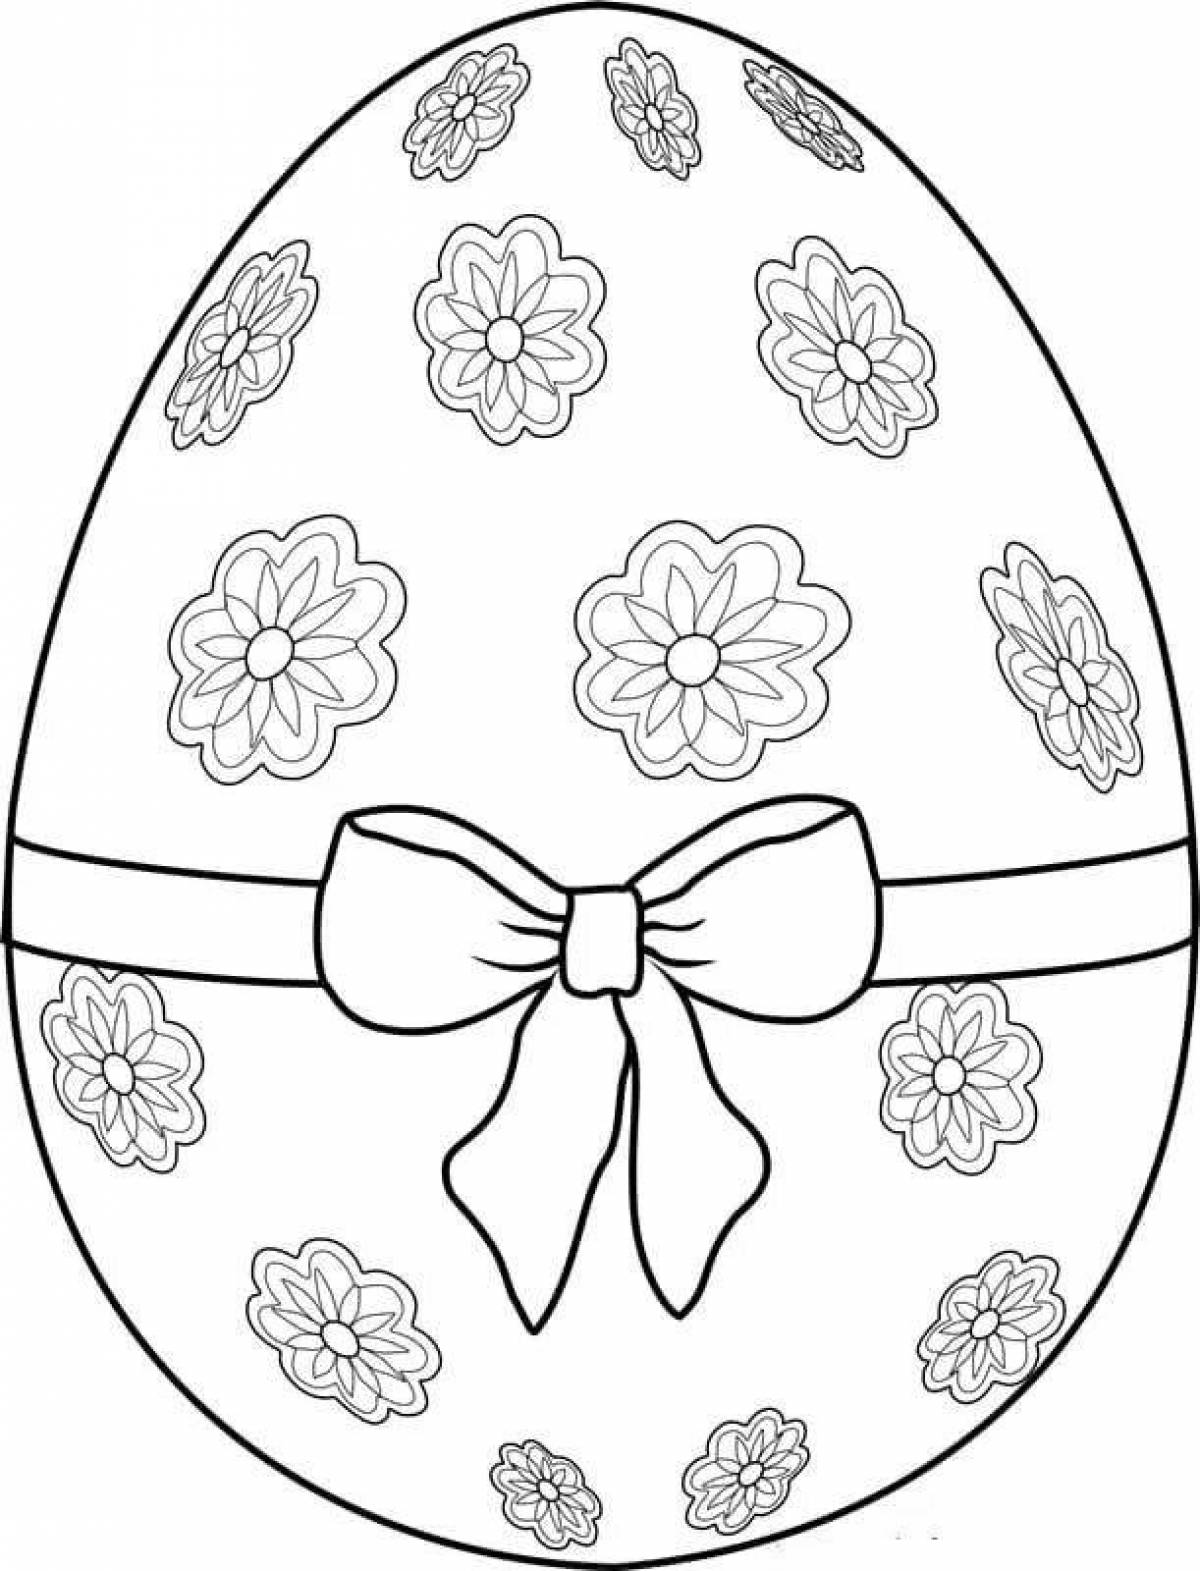 Заготовка пасхального яйца. Пасхальное яйцо раскраска. Раскраски пасочных яиц. Яйца на Пасху раскраска. Пасхальное яйцо раскраска для детей.